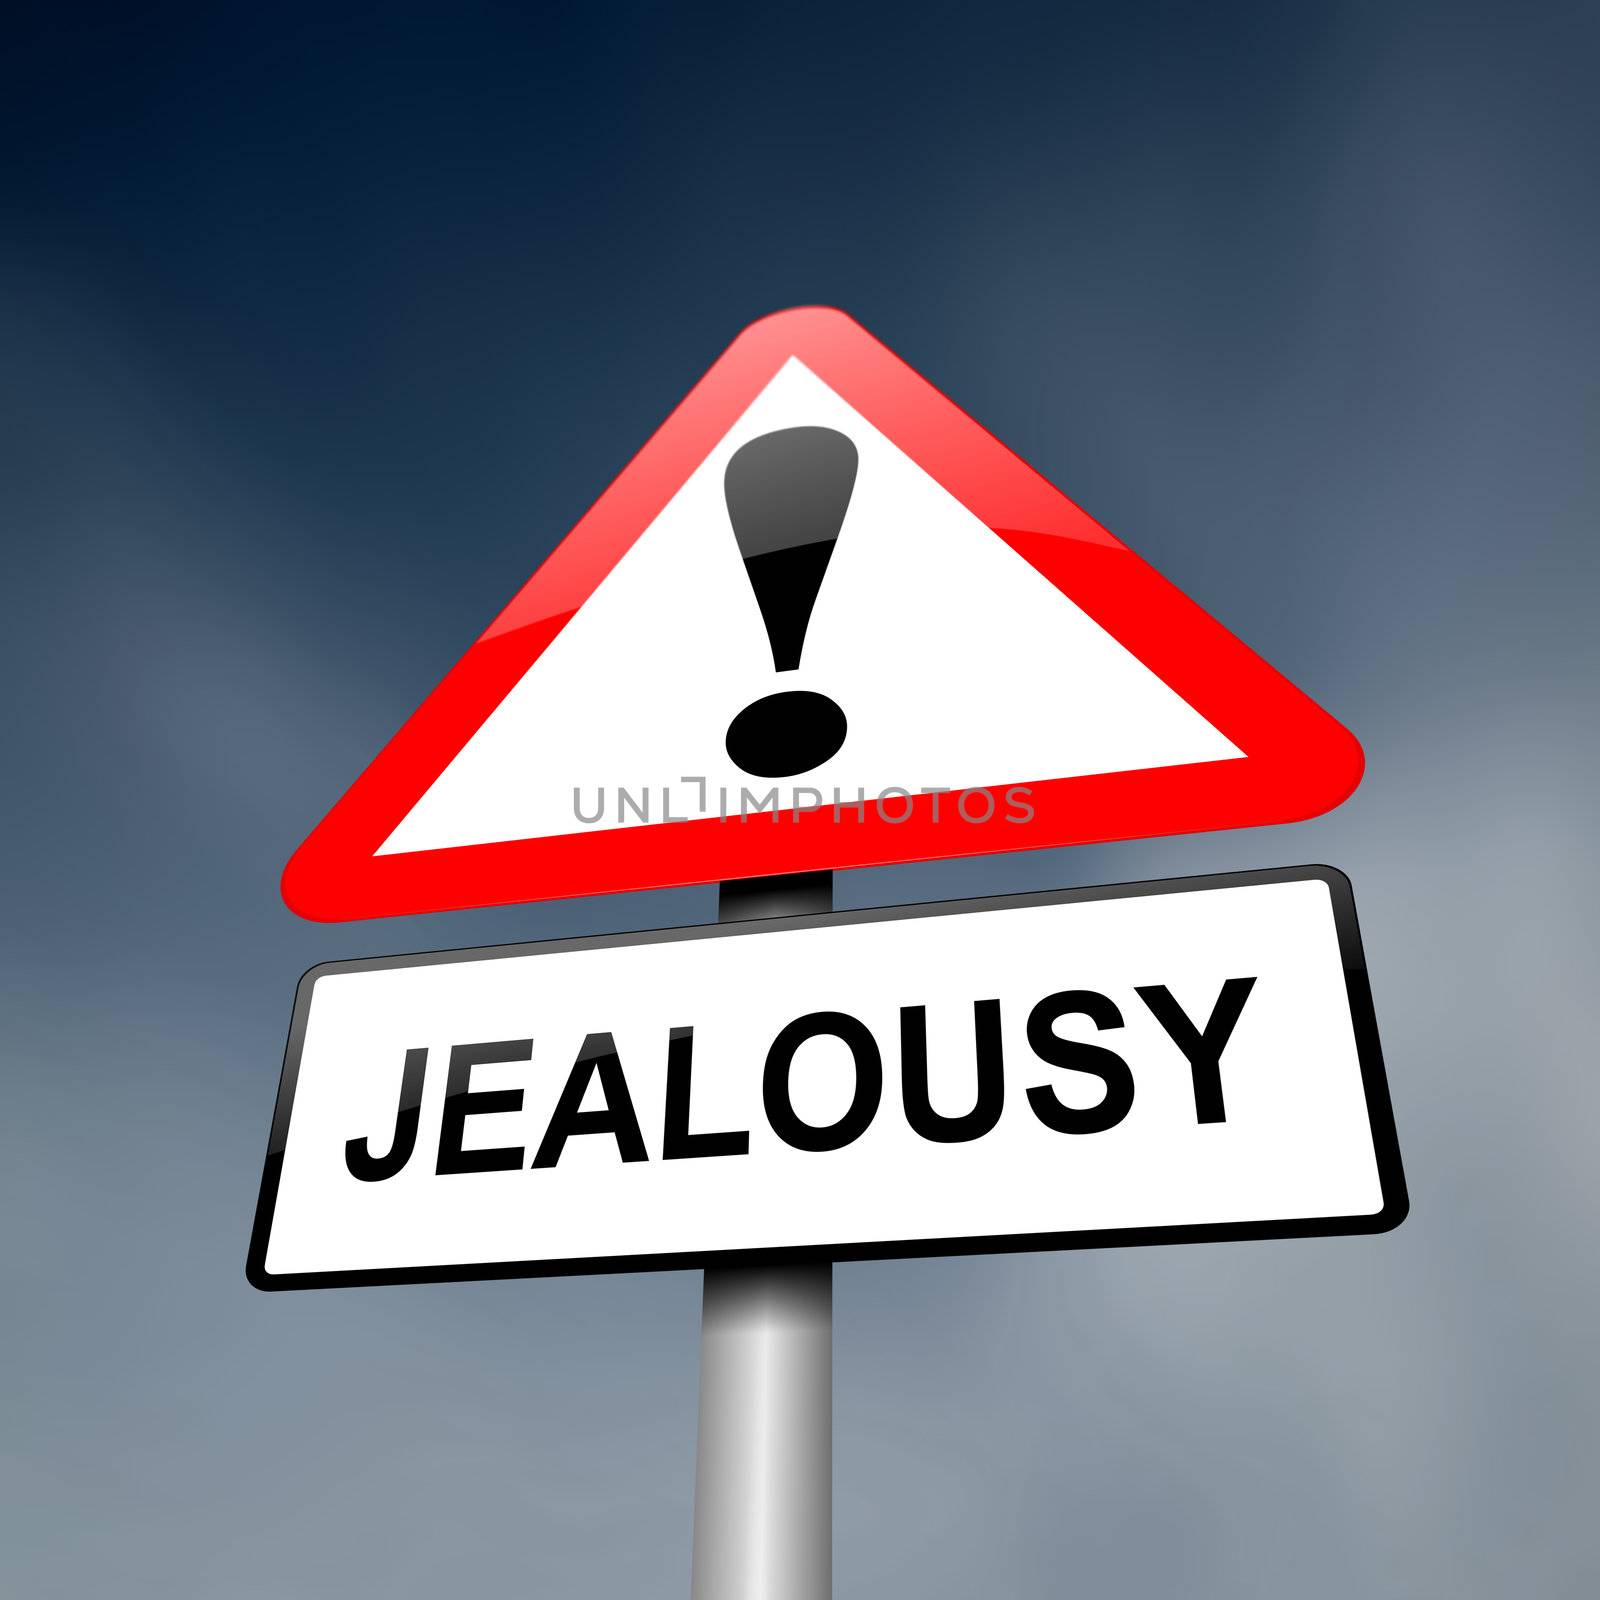 Jealousy concept. by 72soul